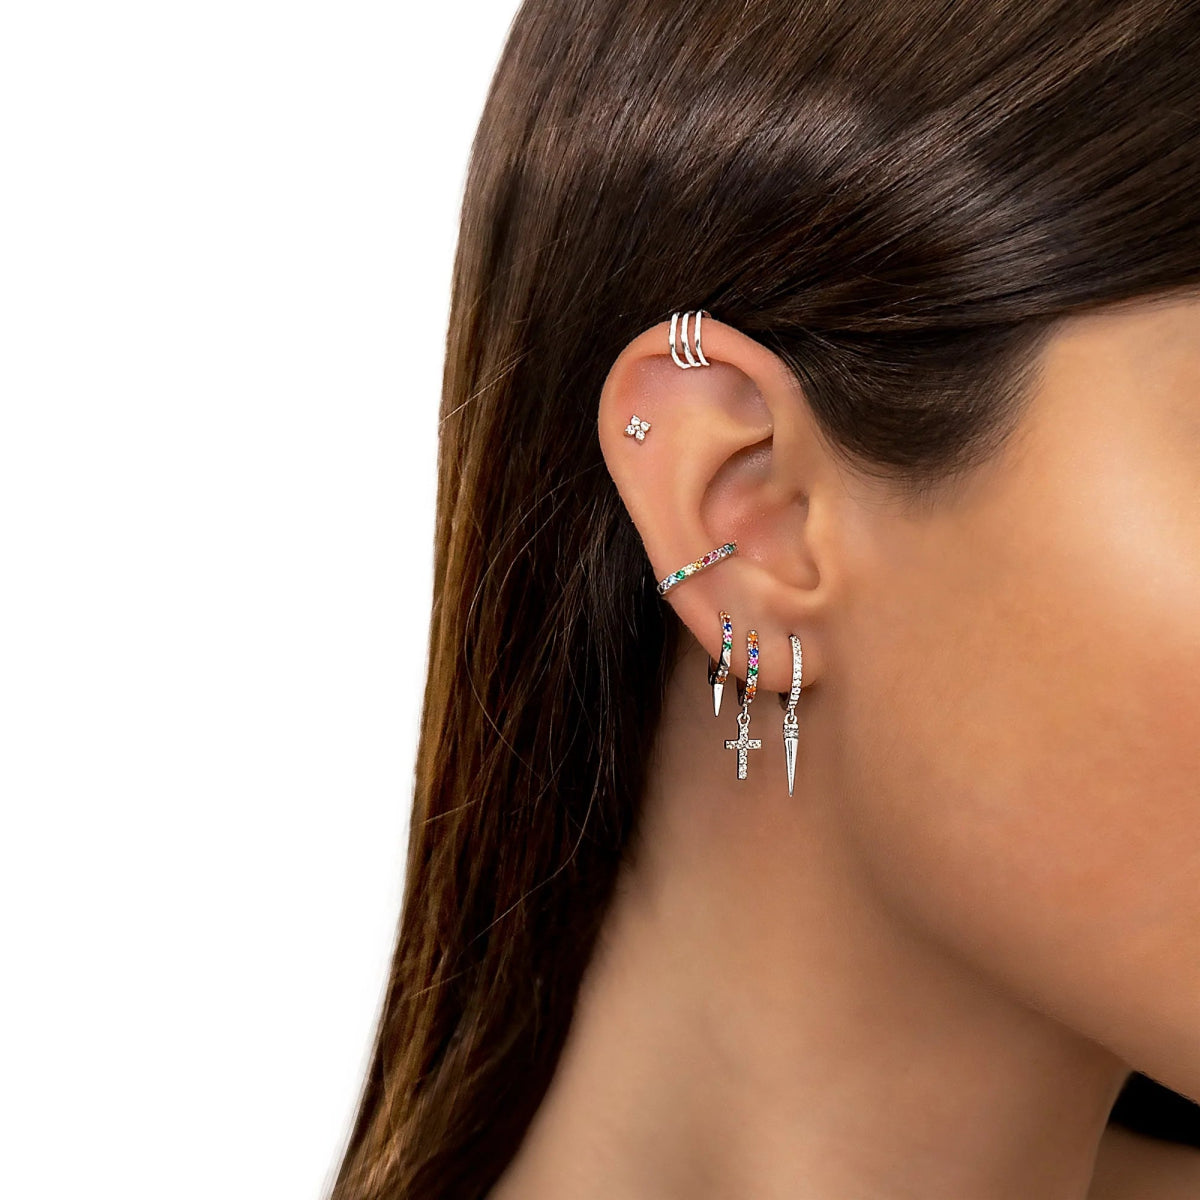 "Ear Cuff - Liberty" Earrings - Milas Jewels Shop